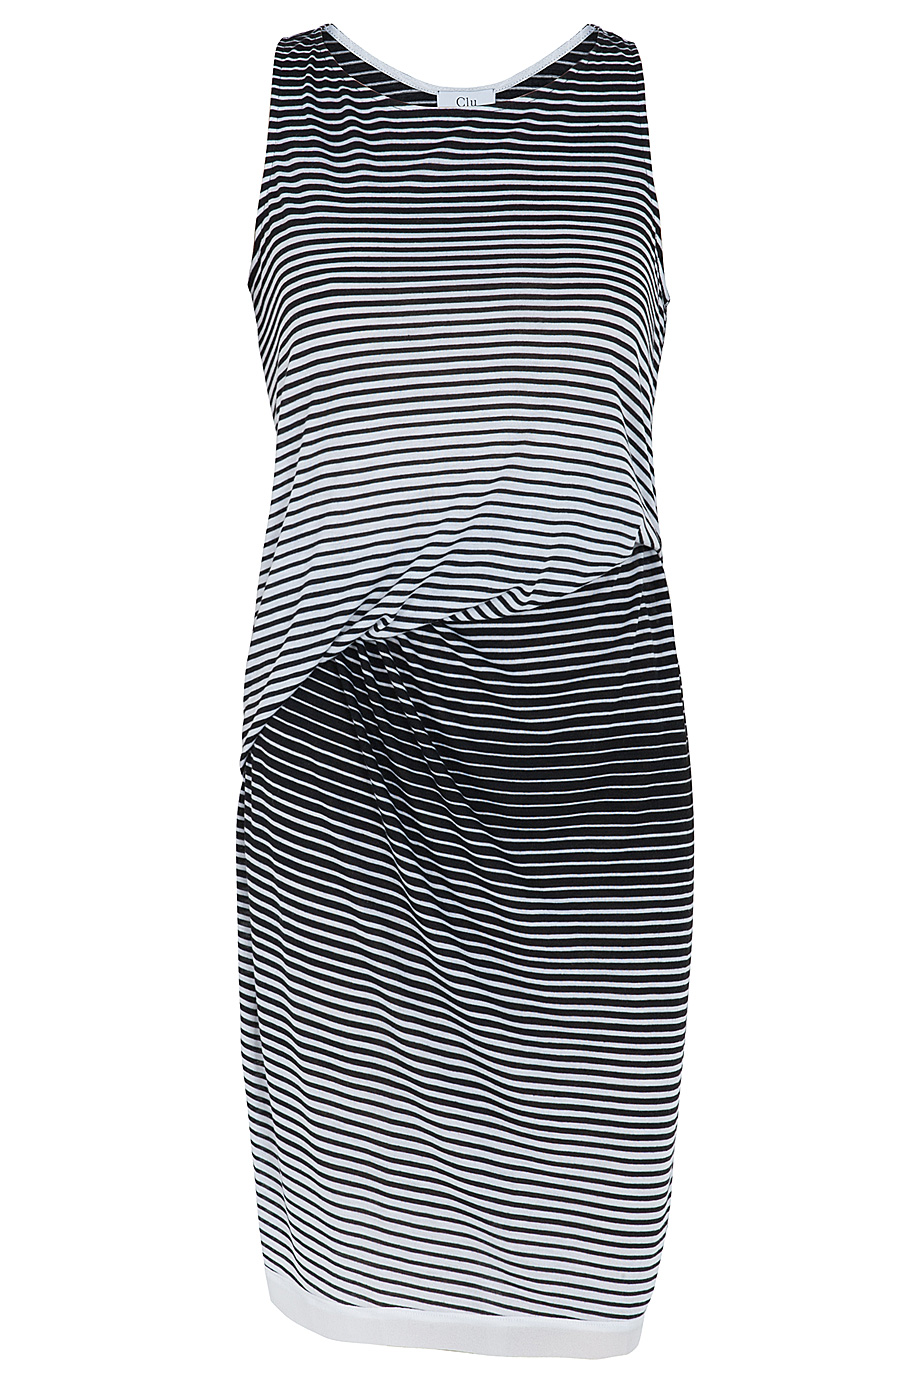 Lyst - Clu Stripe Draped Dress in Black